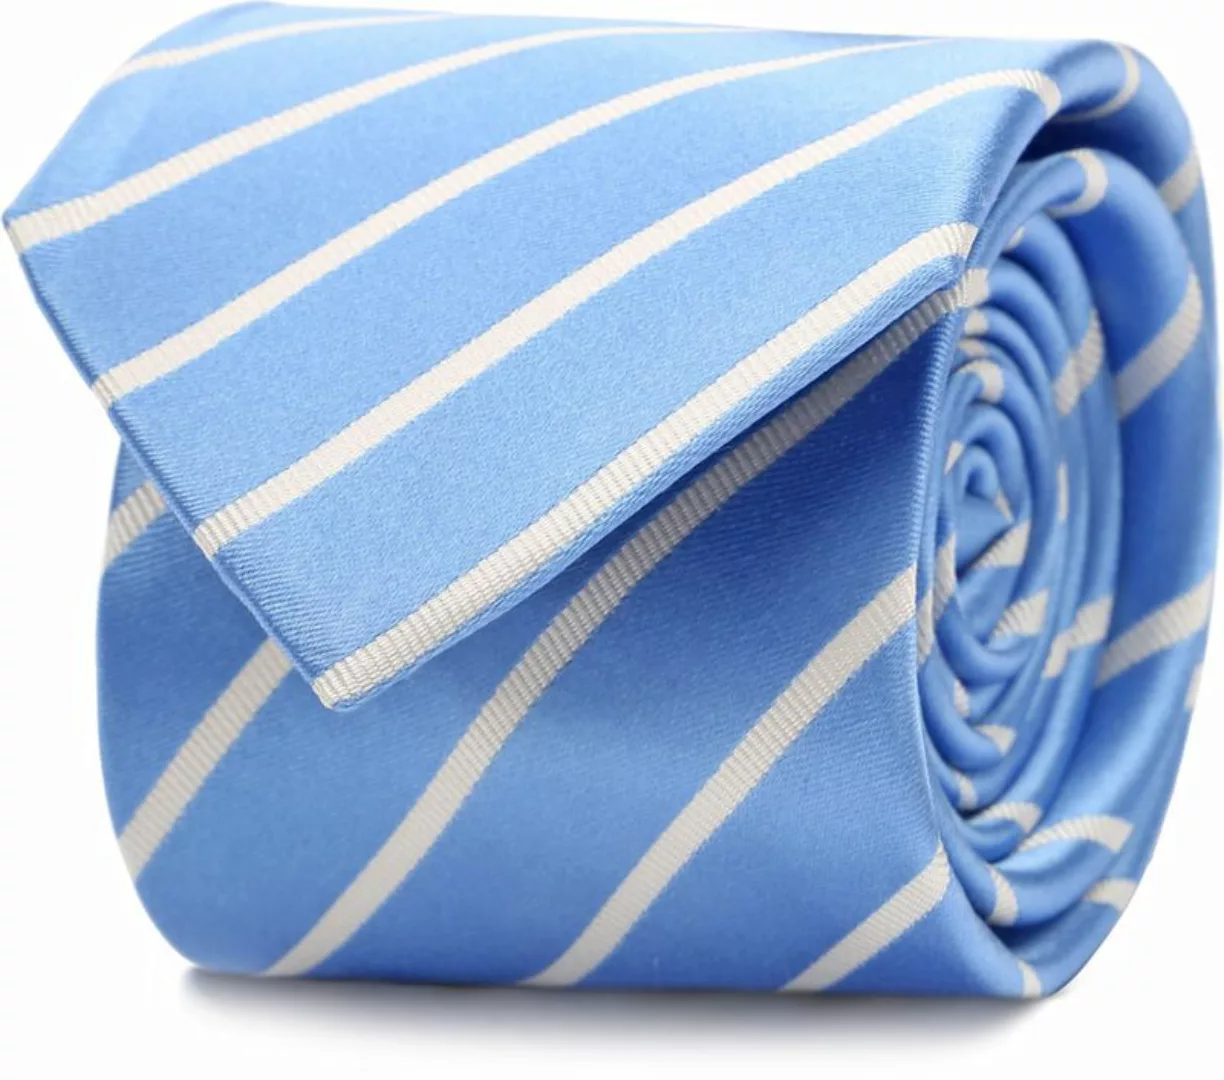 Suitable Krawatte Seide Streif Blau - günstig online kaufen